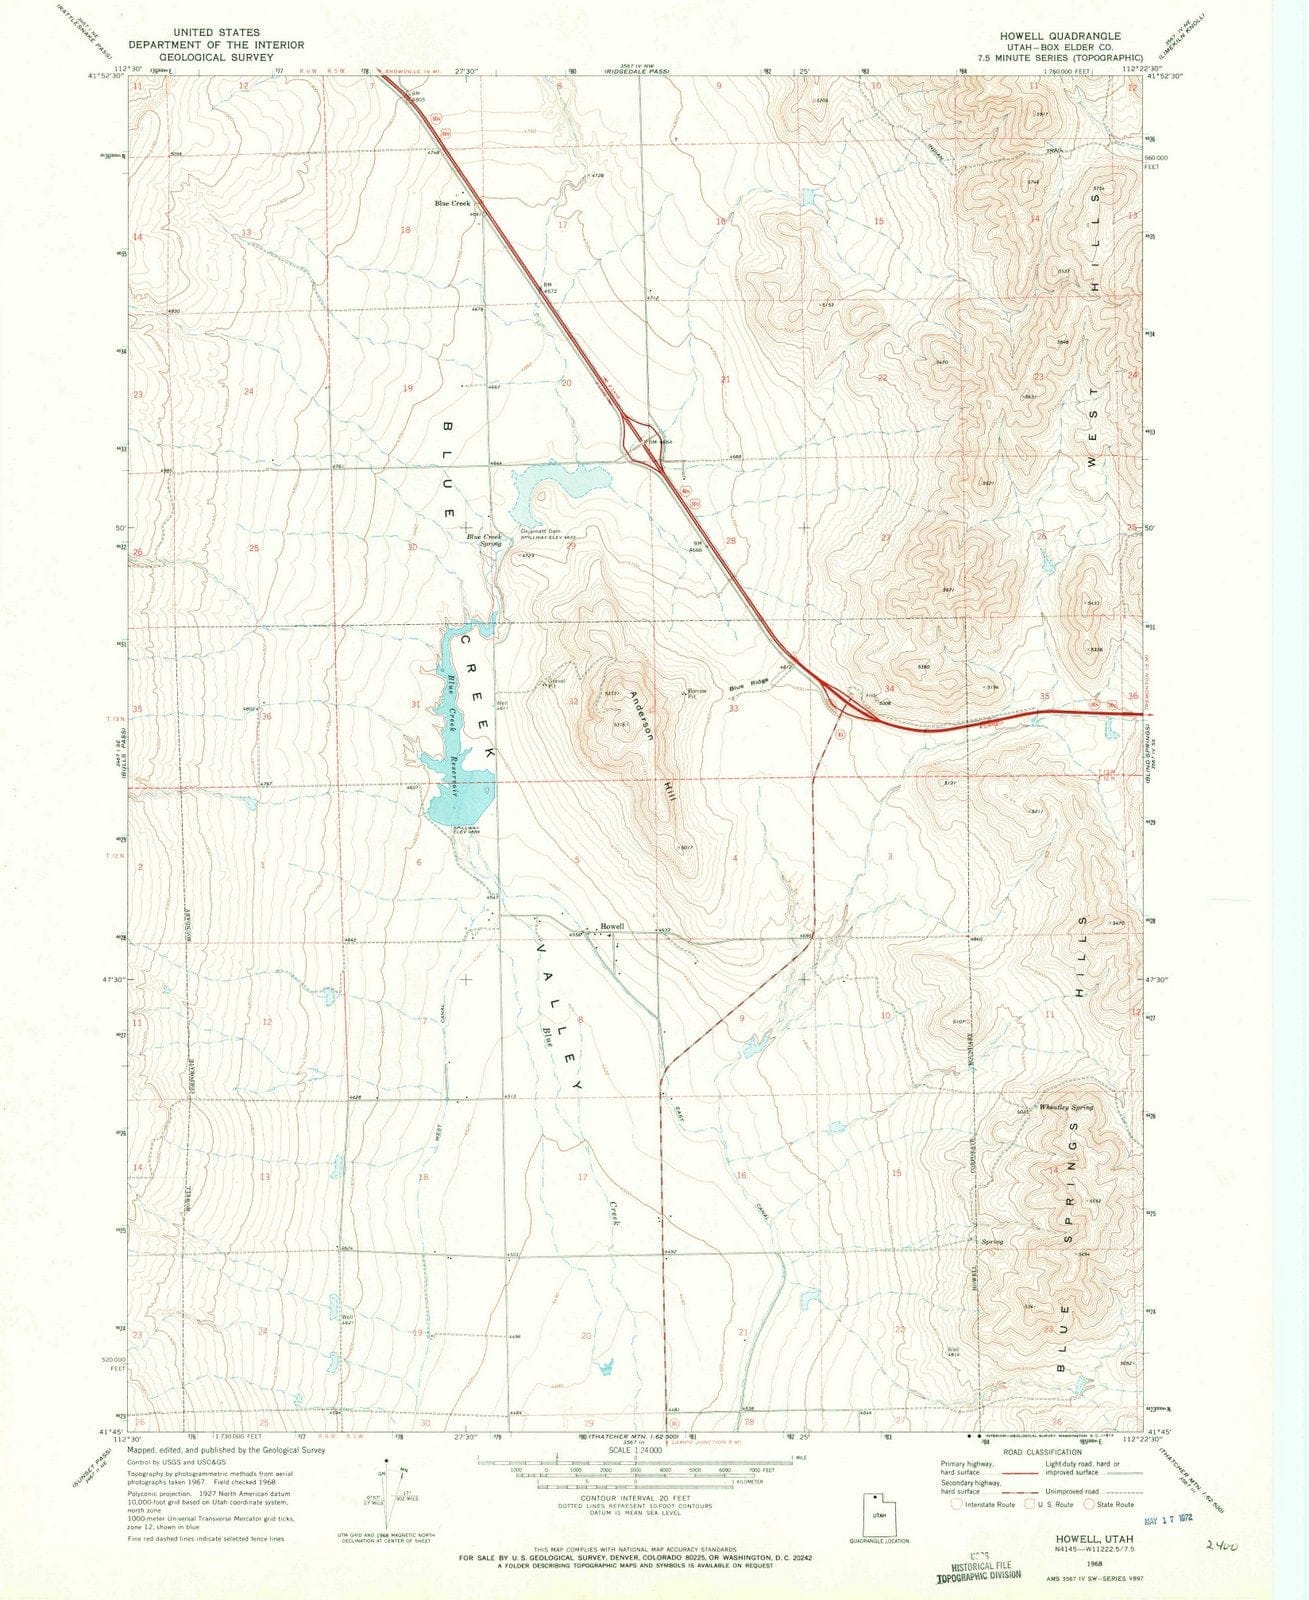 1968 Howell, UT - Utah - USGS Topographic Map